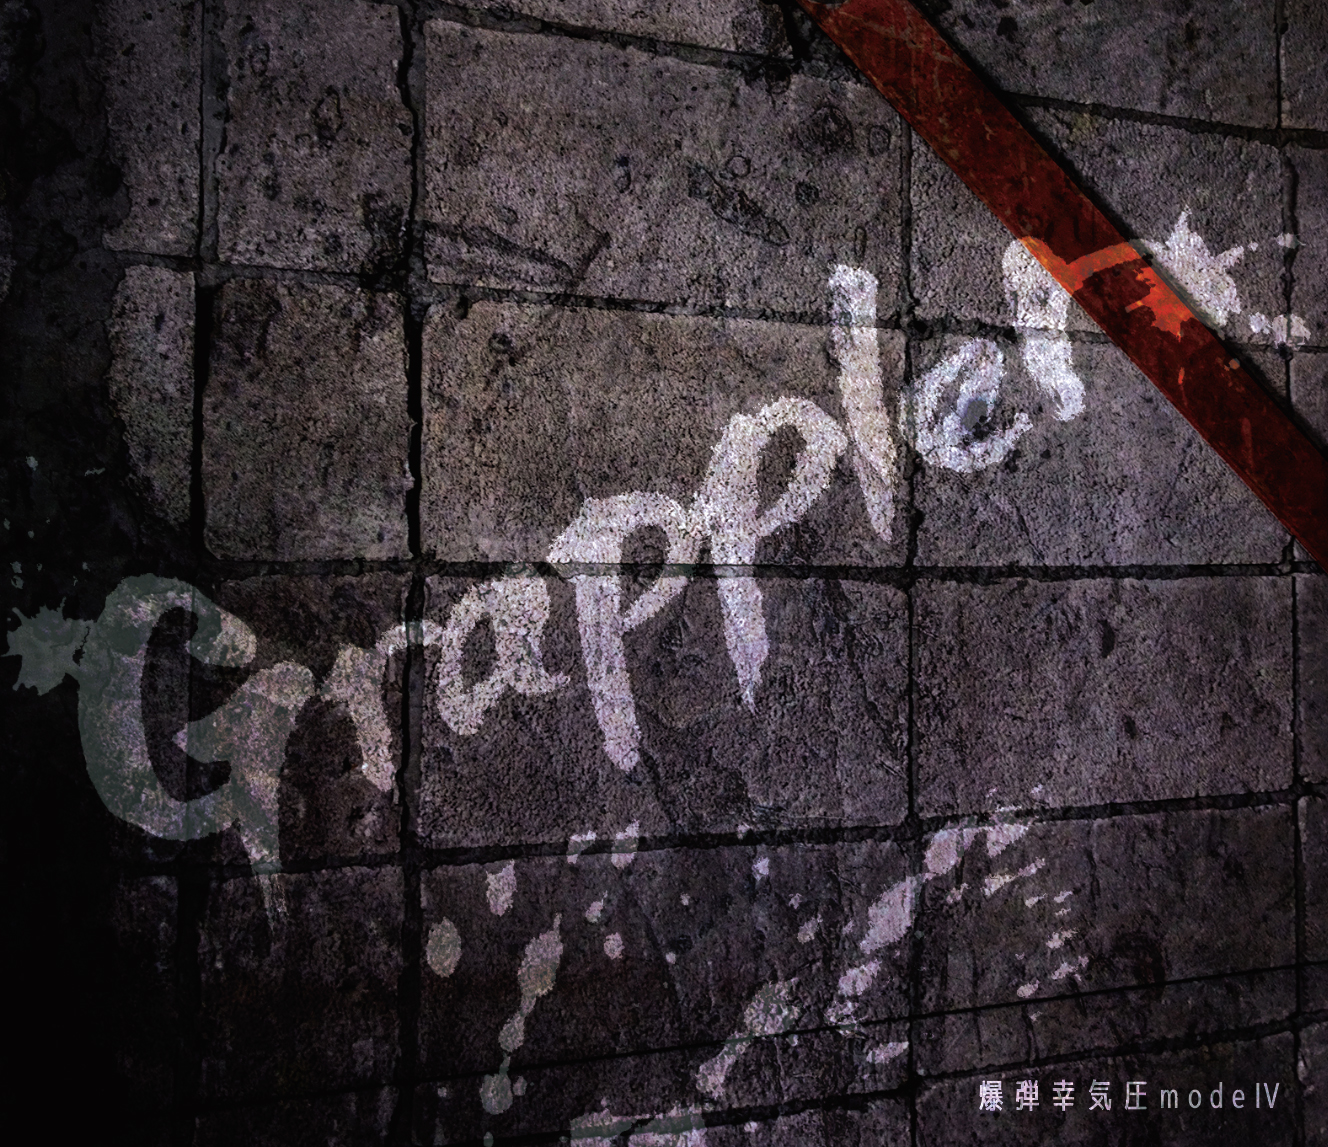 爆弾幸気圧modeⅣ 「Grappler」